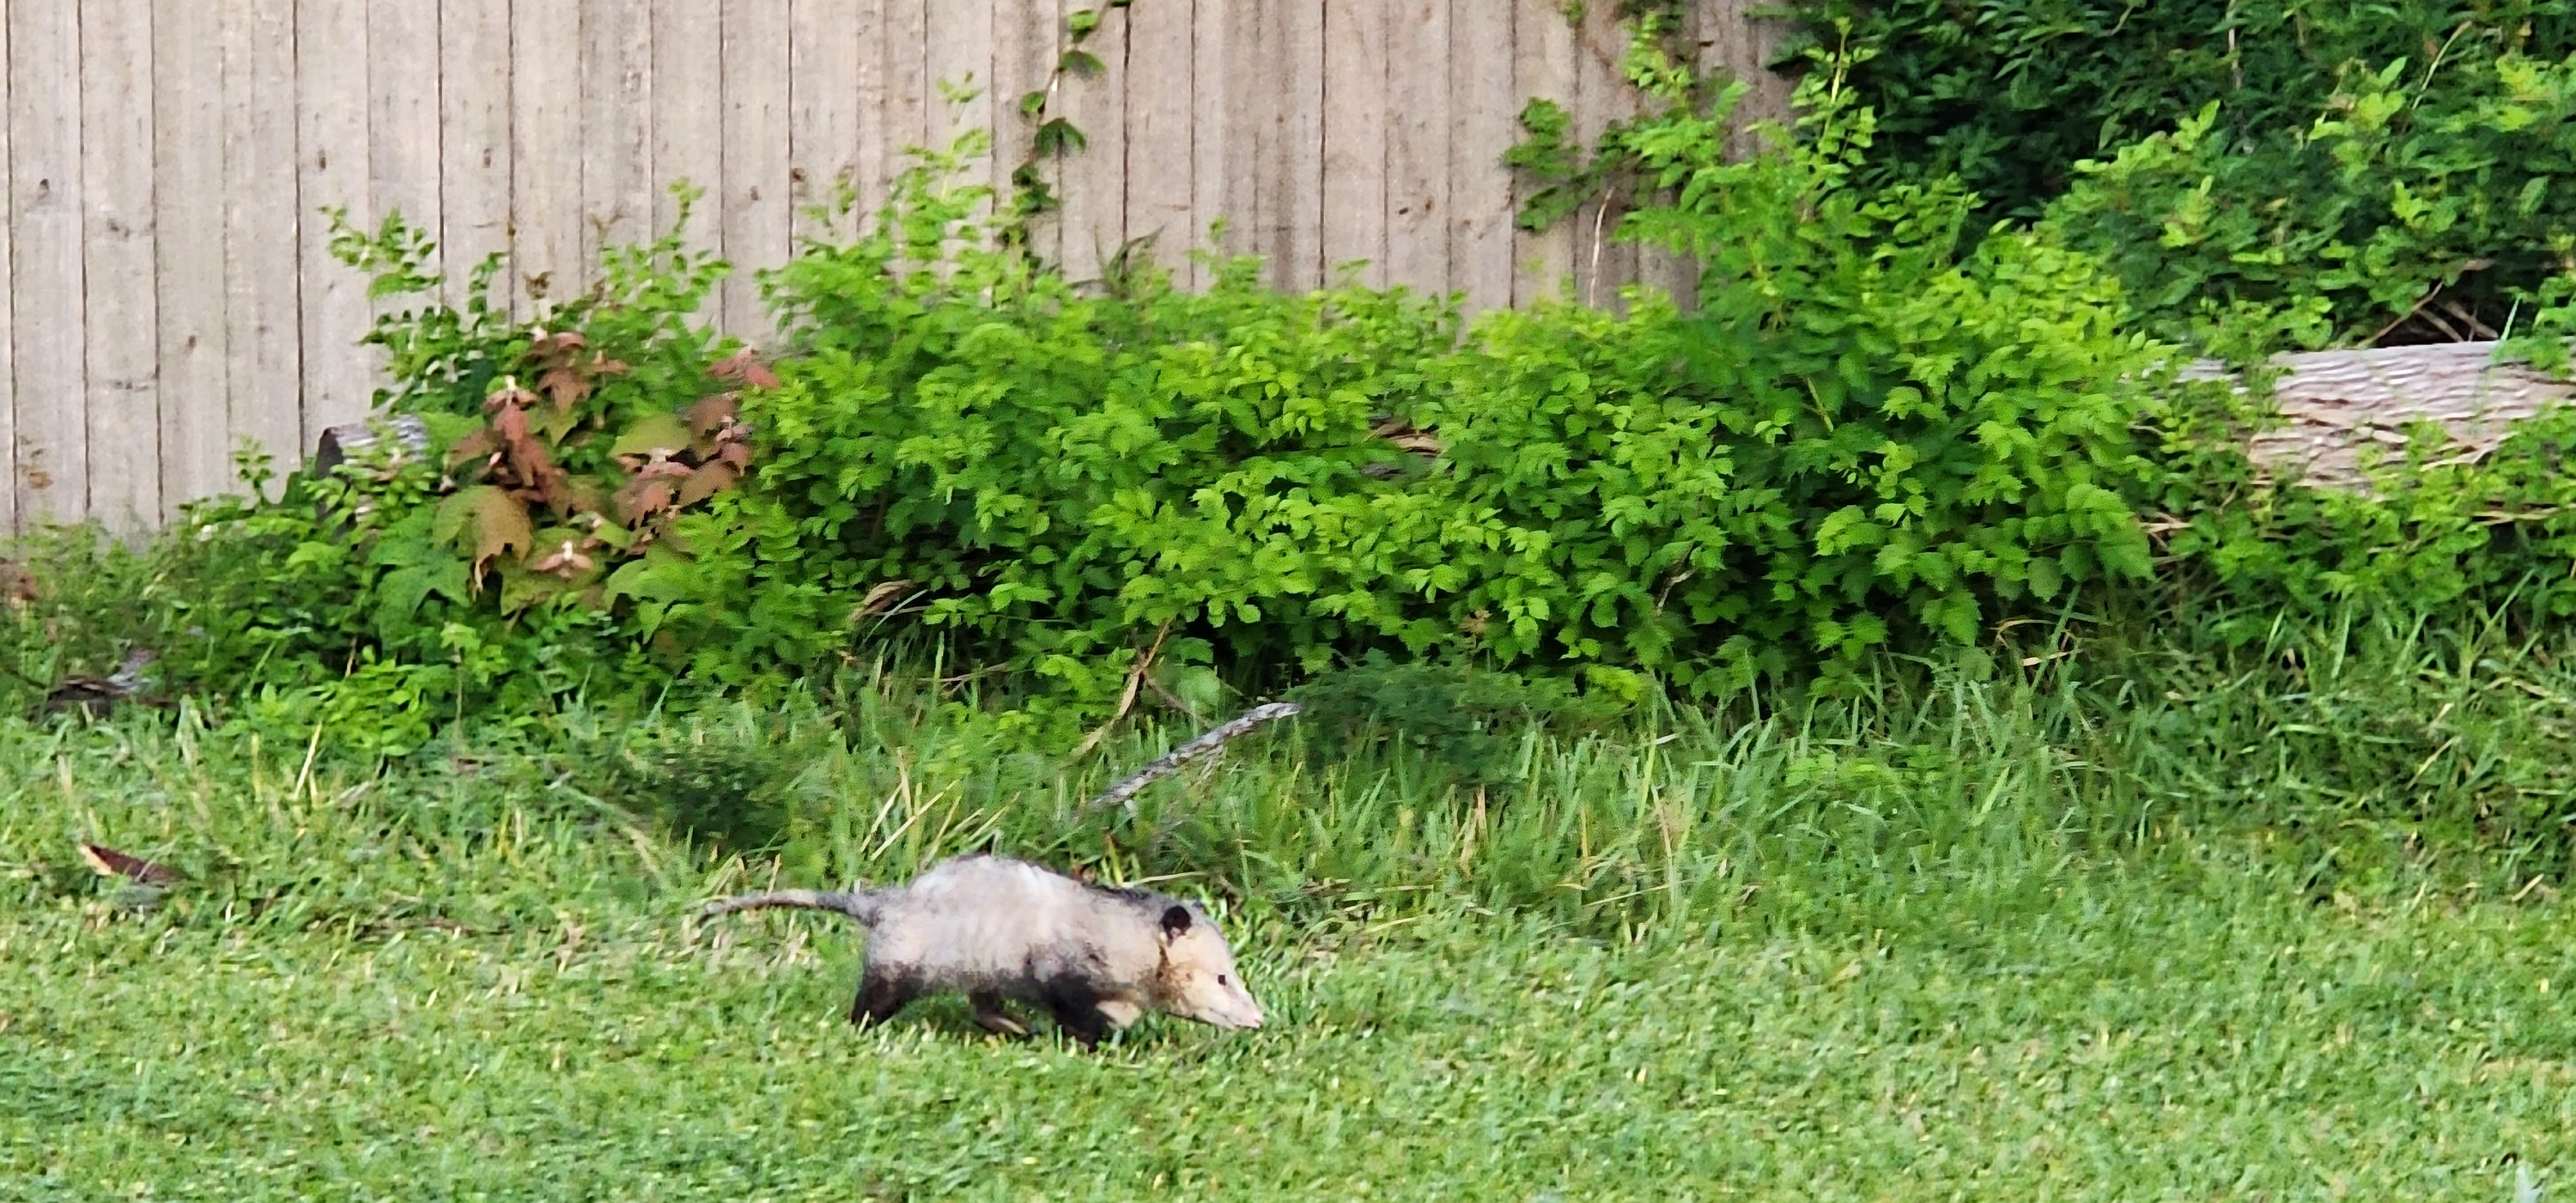 Opossum walking in grass